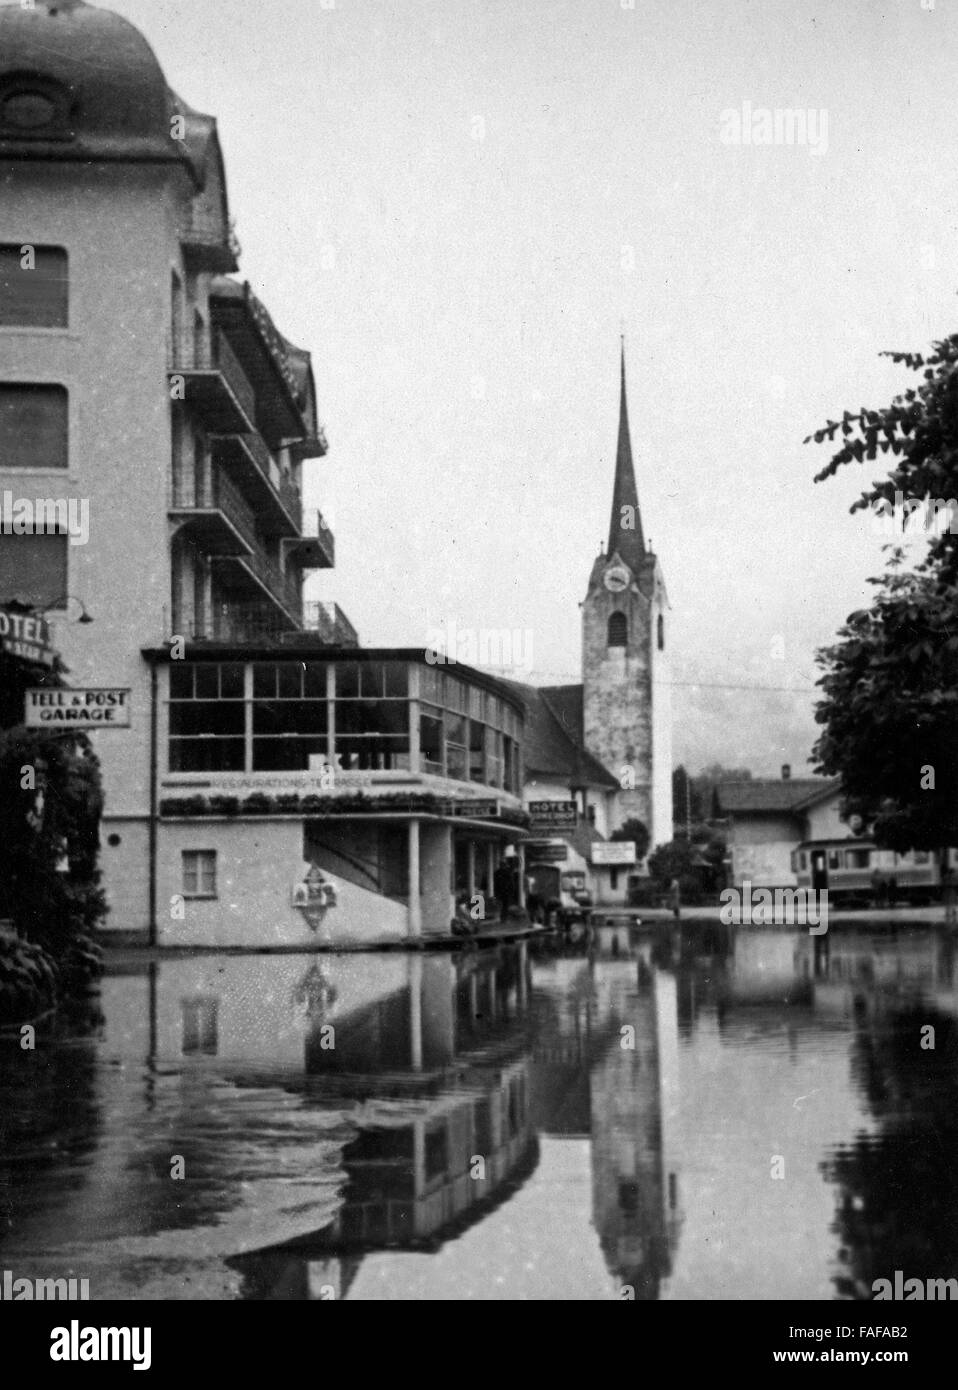 Hochwasser in Flüelen im Kanton Uri in der Schweiz, 1930er Jahre. Alluvione a Fluelen a Canton Uri Svizzera, 1930s. Foto Stock